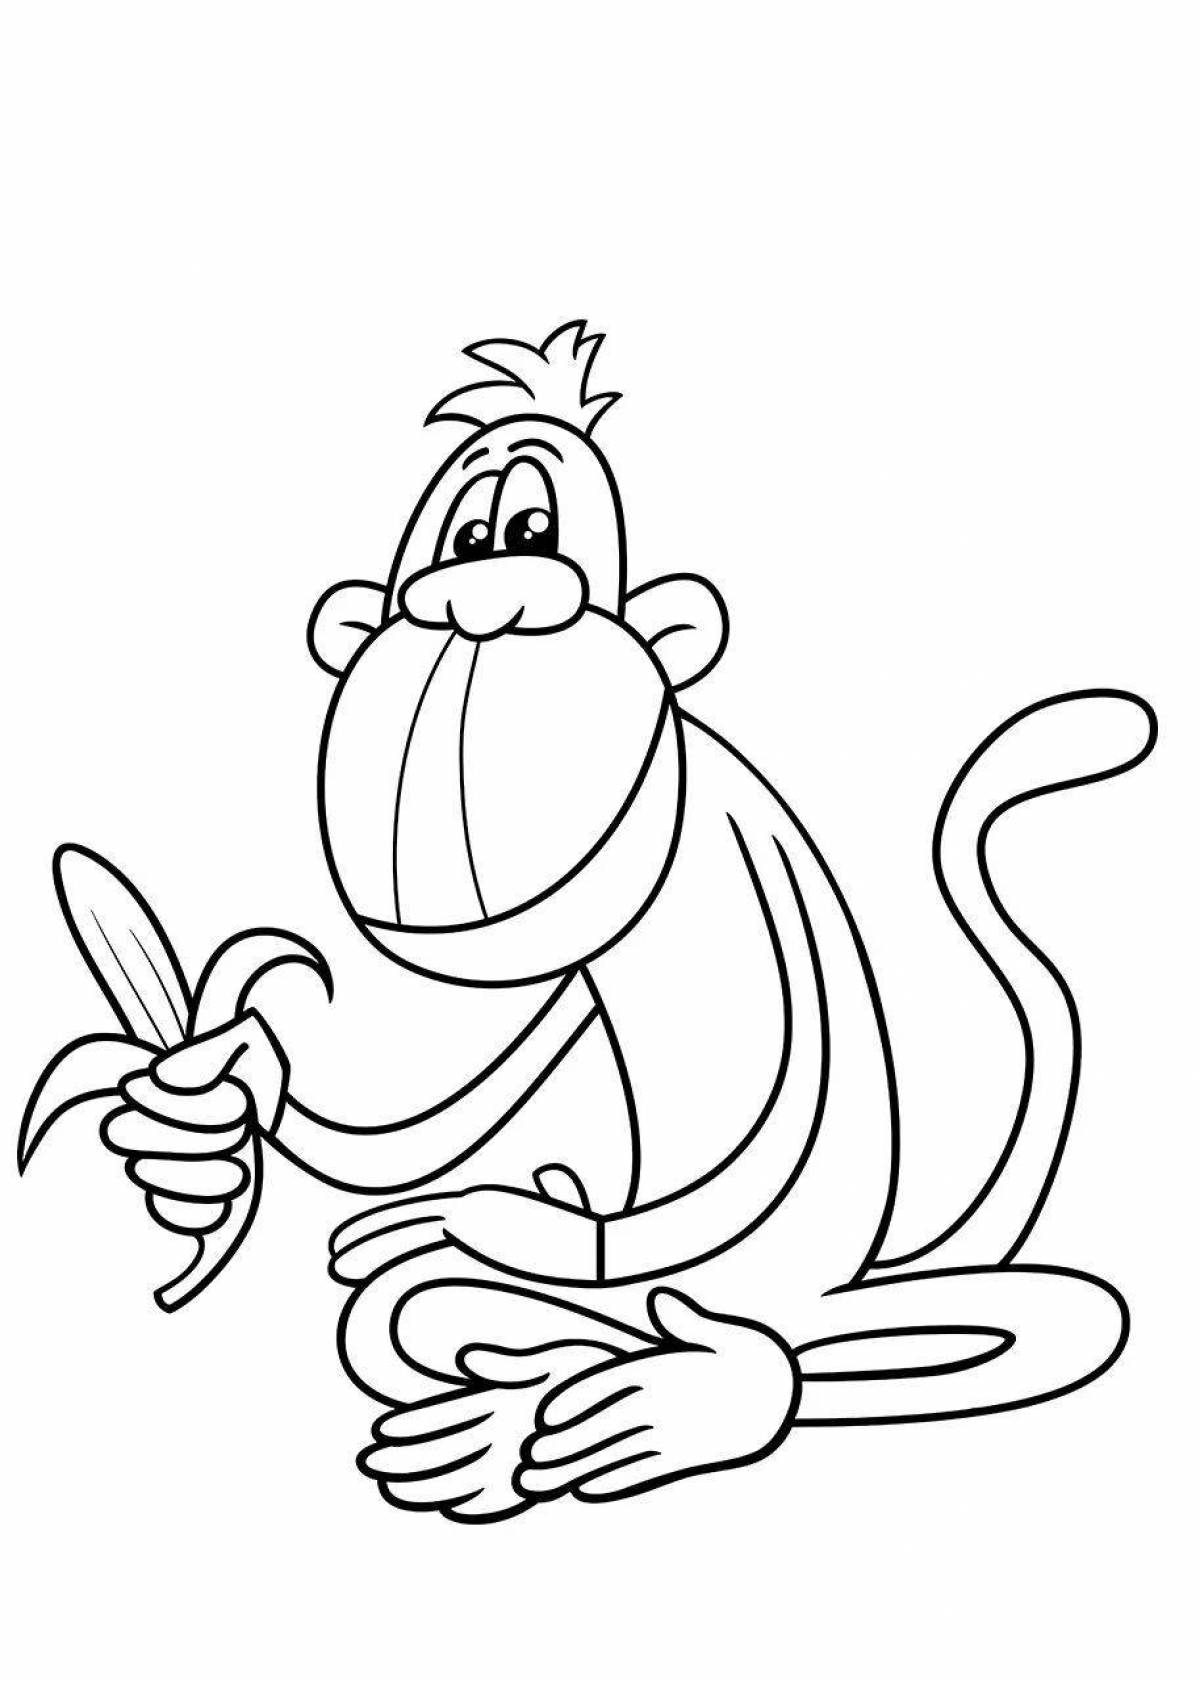 Раскраска Обезьянка с бананами | Раскраски обезьянки. Раскраска обезьяна для детей